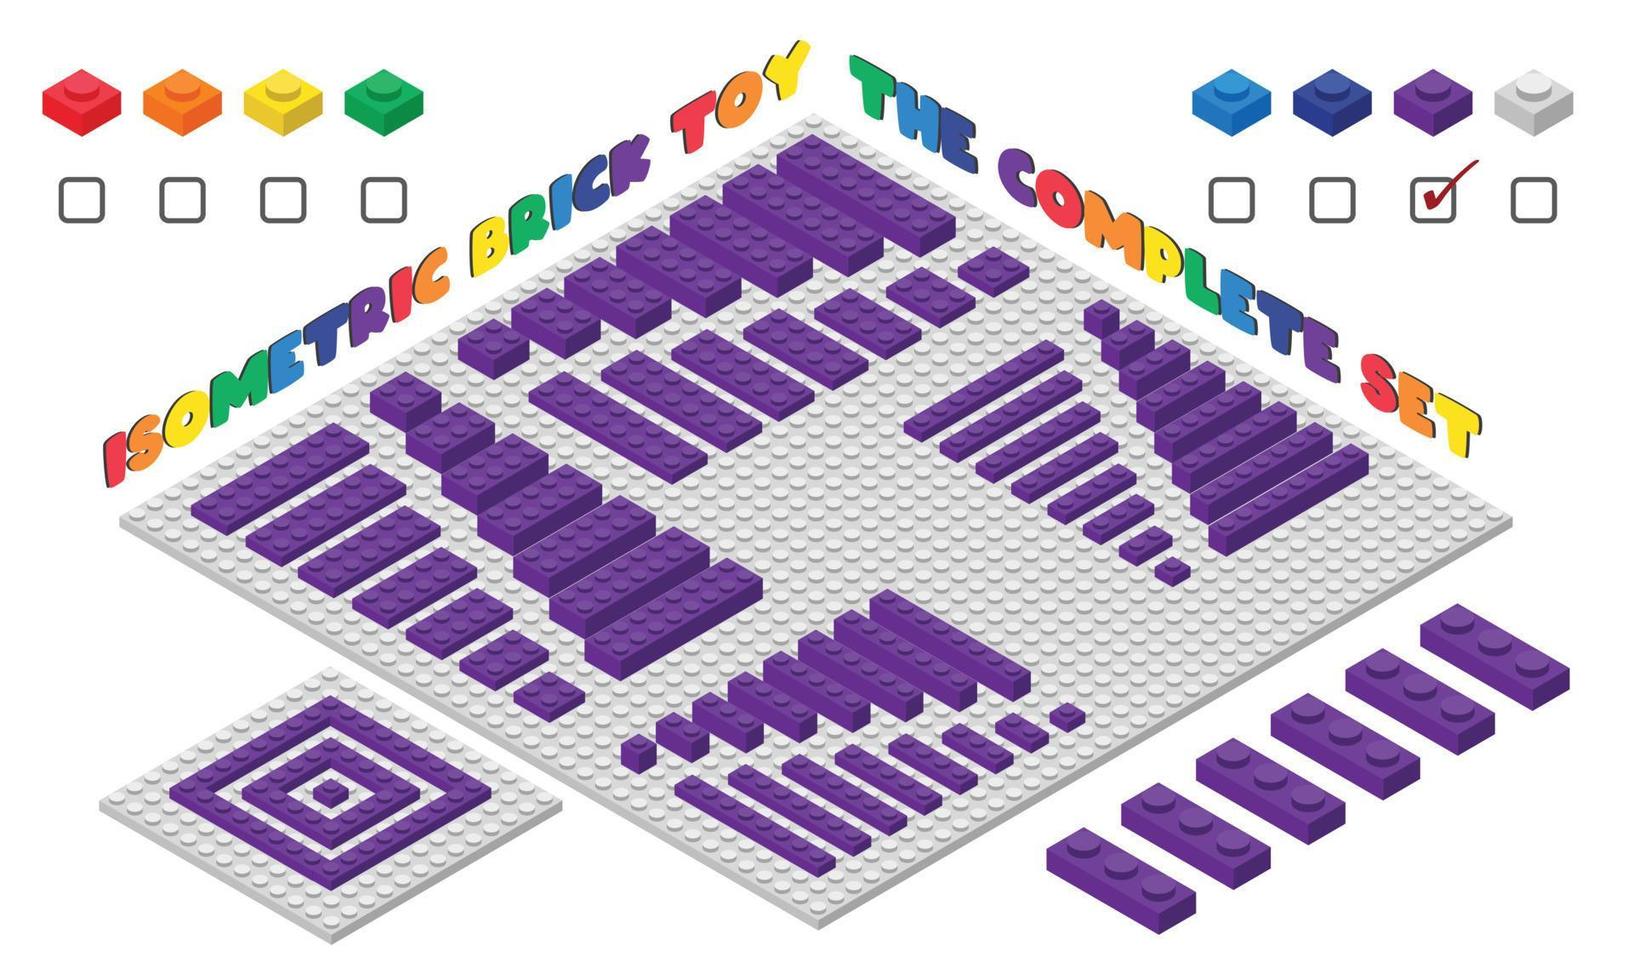 o conjunto completo de brinquedo de tijolo infantil 3d roxo em estilo isométrico. blocos de construção de plástico brinquedo ilustração vetorial isolado no branco. design plano de brinquedo de tijolo de construção quadrada. jogo de brinquedos de tijolos de plástico vetor